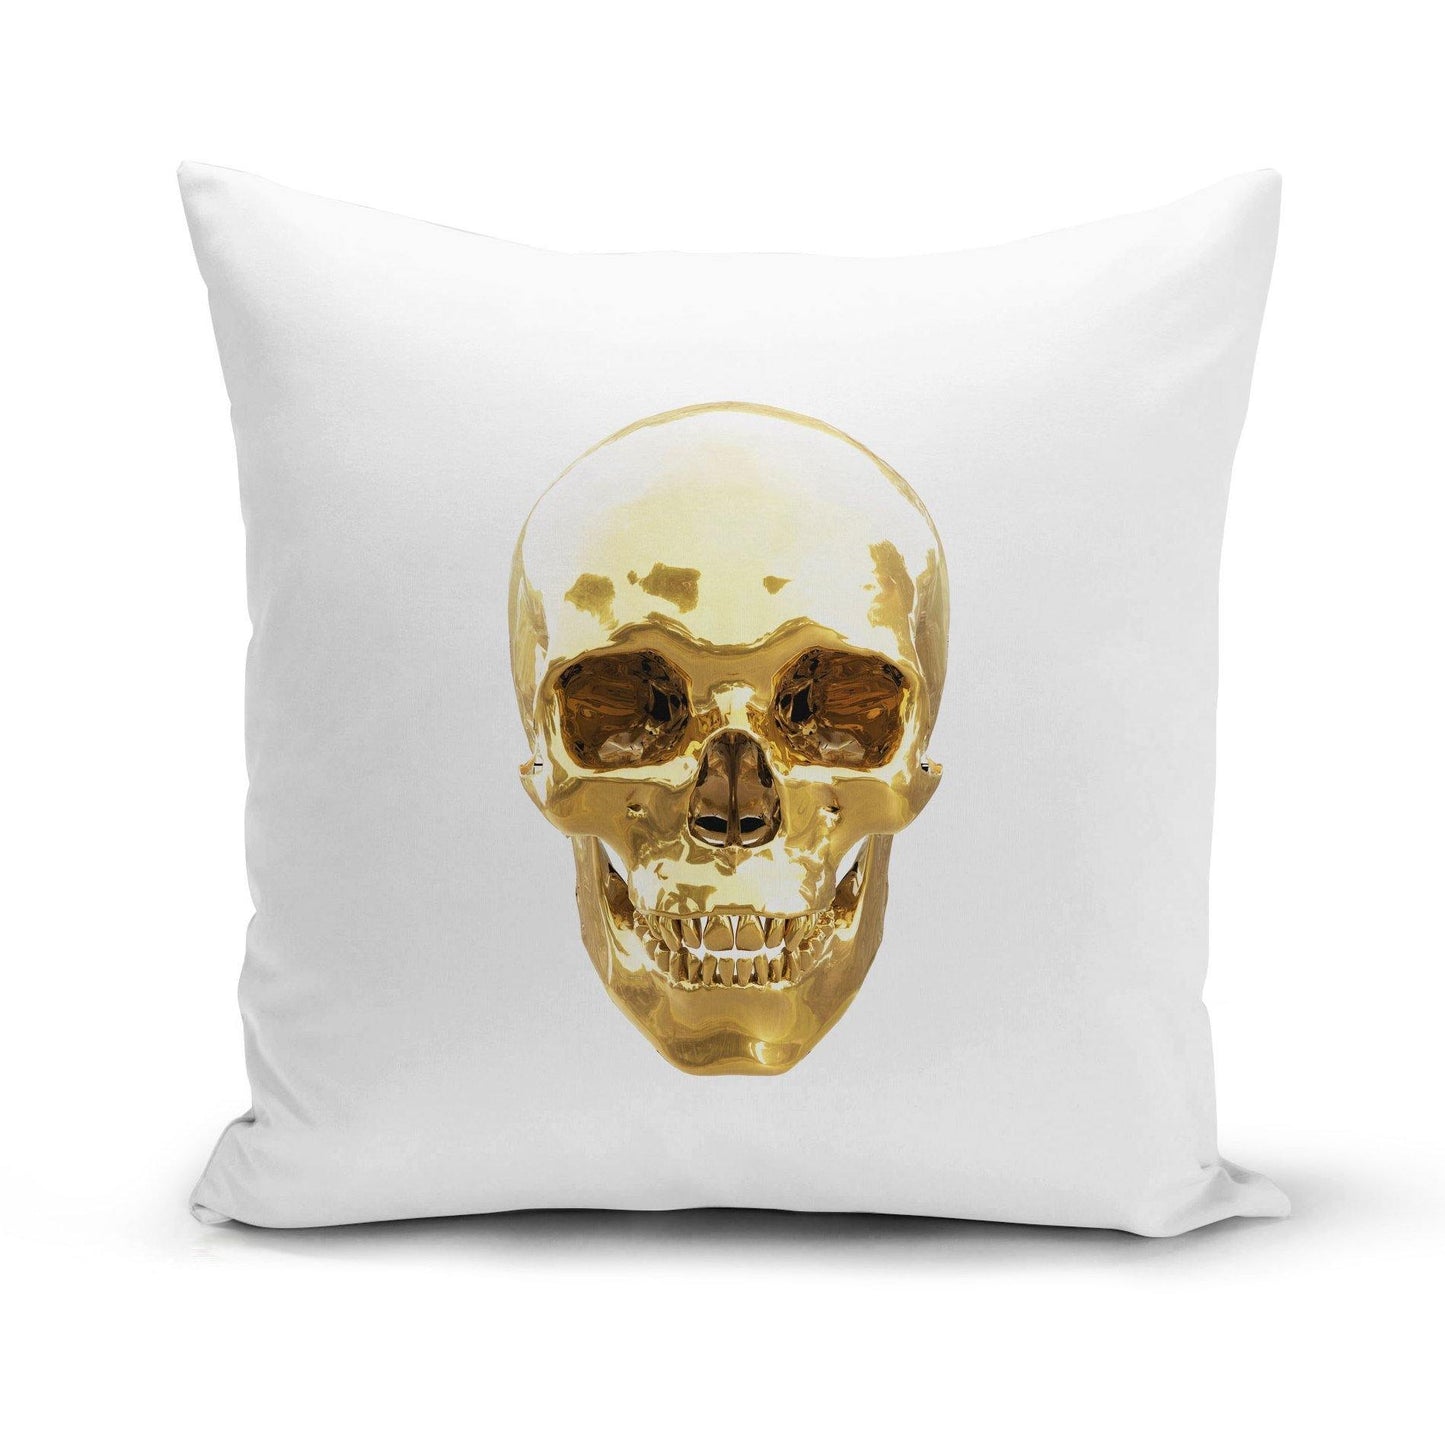 Golden Skull Pillow Cover